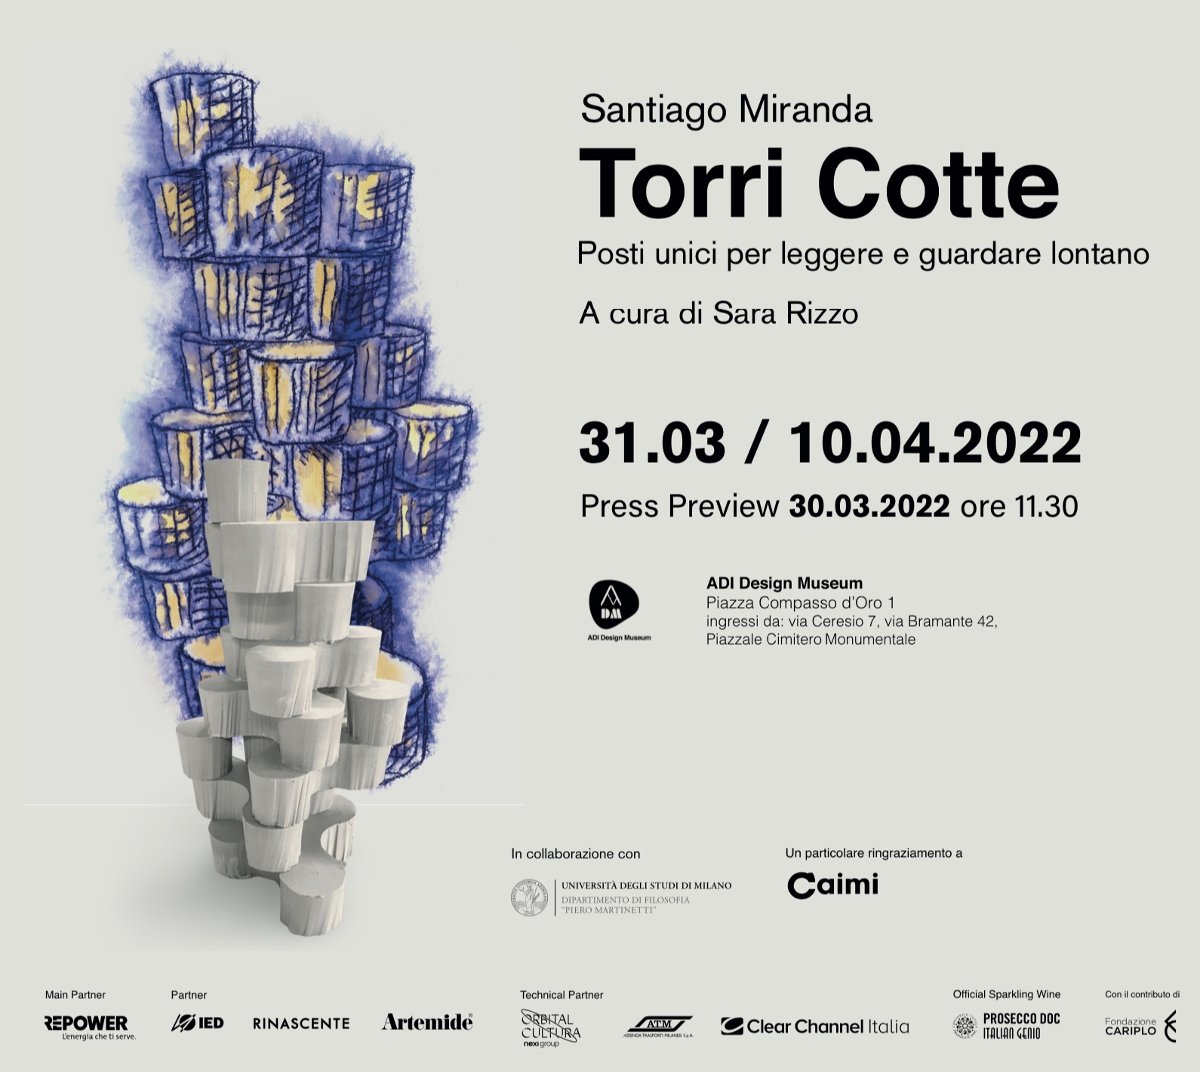 Santiago Miranda - Torri Cotte